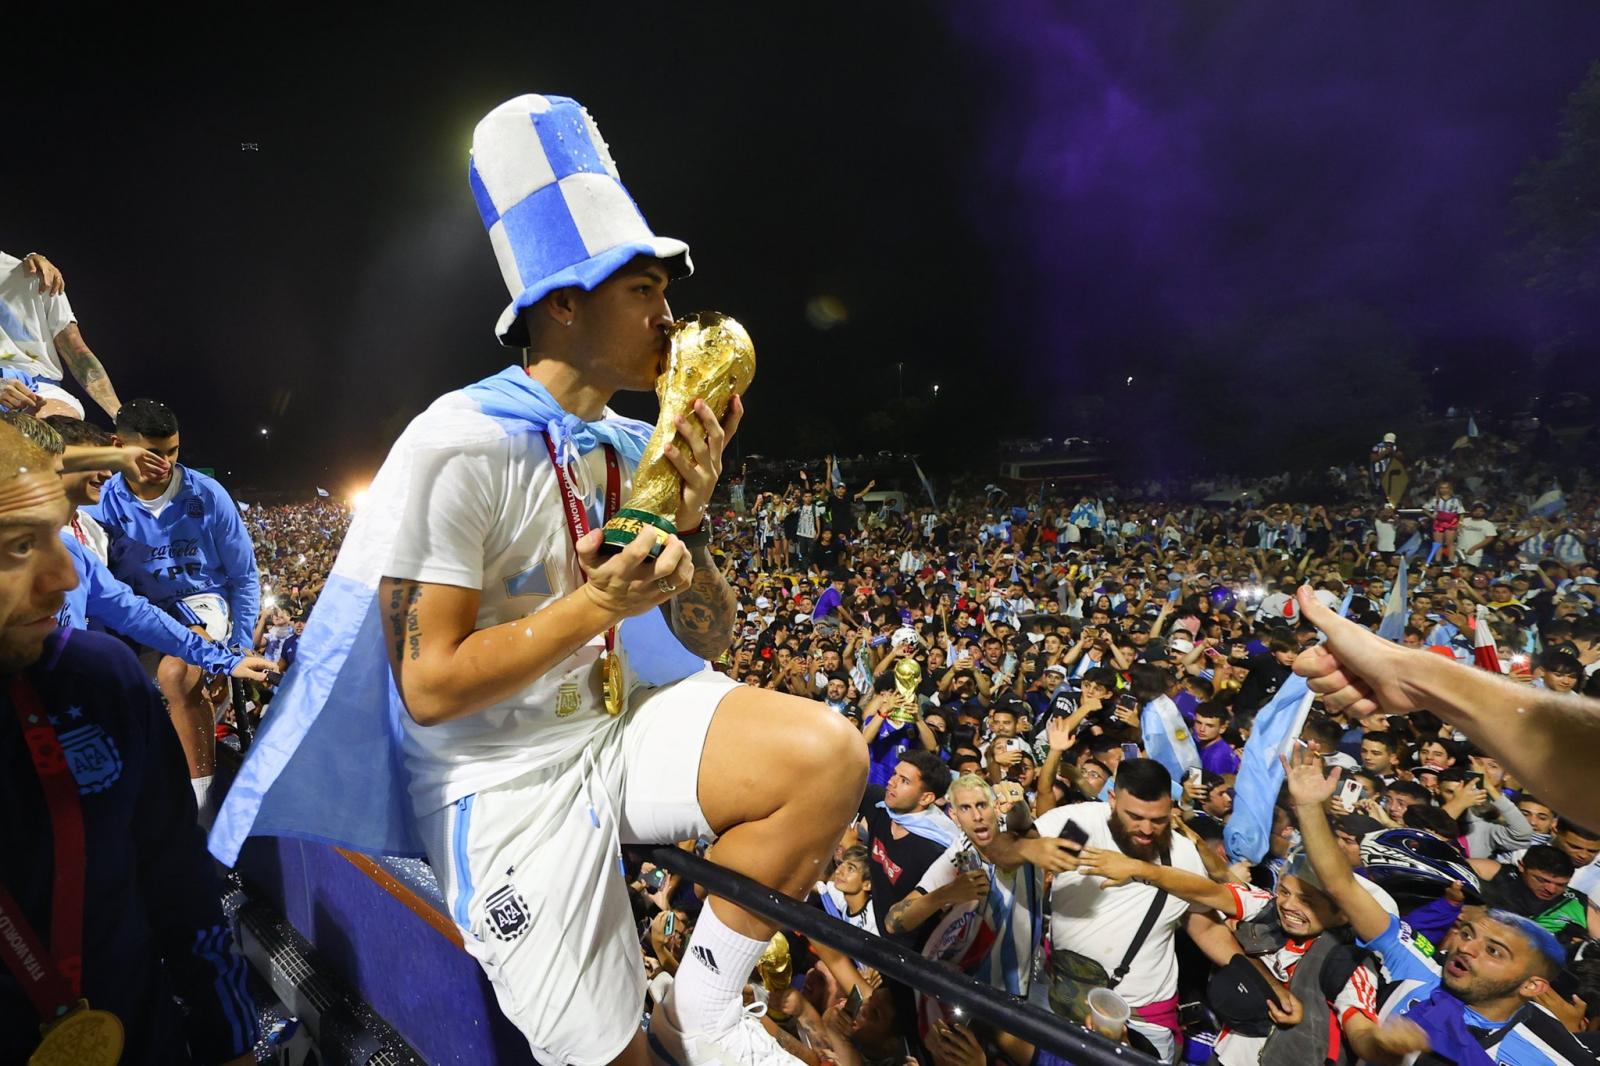 Les nouveaux champions du monde sont arrivés en Argentine (IMAGES)